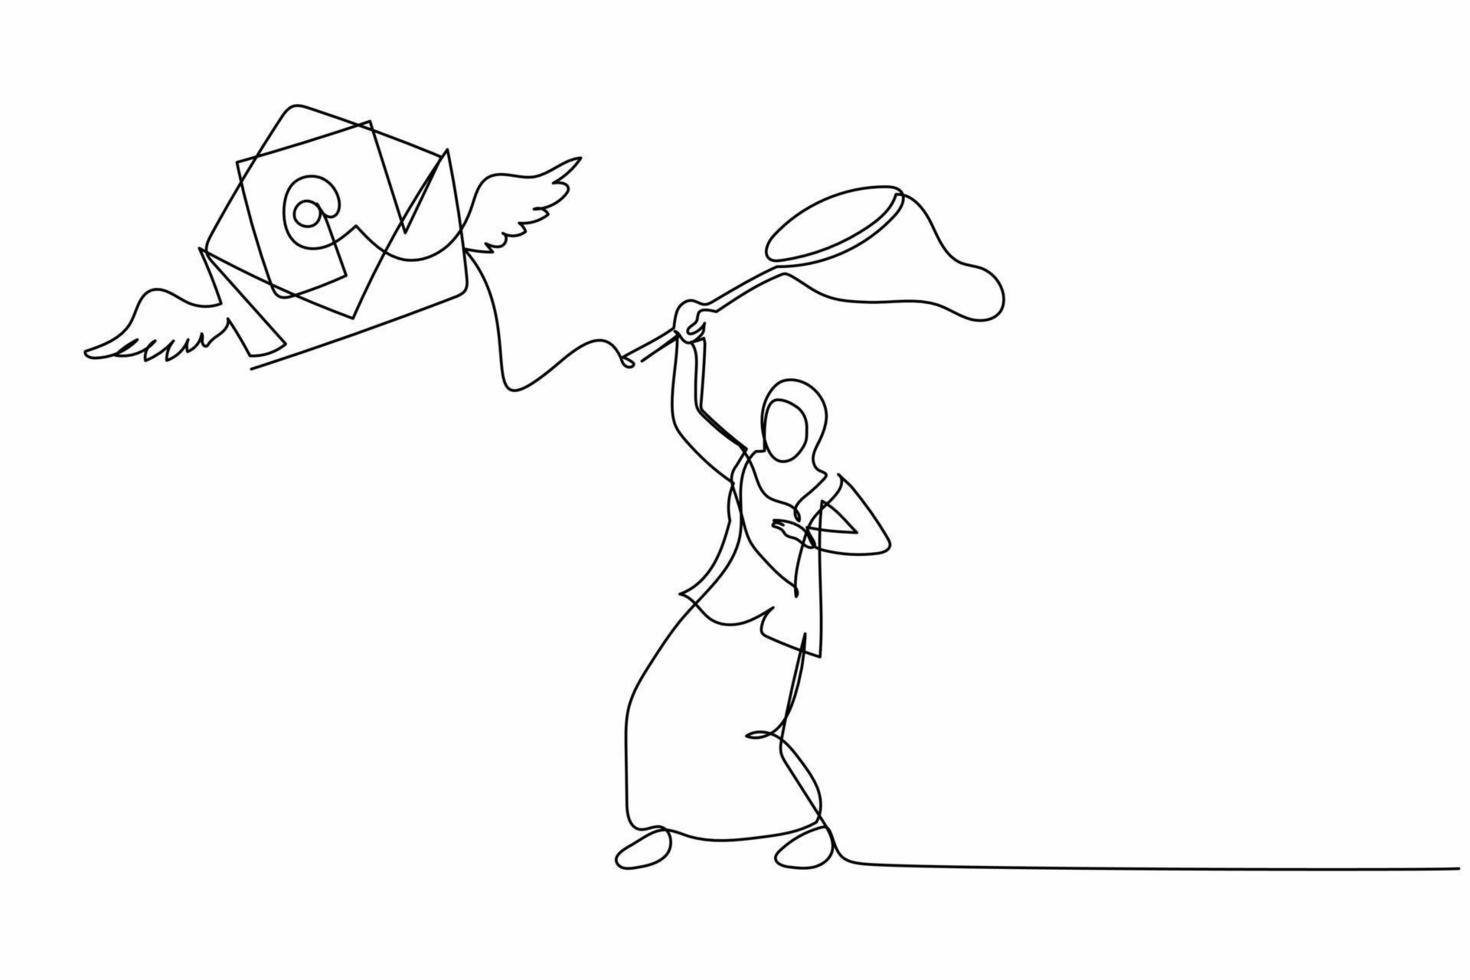 una sola línea de dibujo de una mujer de negocios árabe intenta atrapar el correo volador con una red de mariposas. Carta de sobres de envío faltantes de una entrevista de trabajo. ilustración de vector gráfico de diseño de dibujo de línea continua